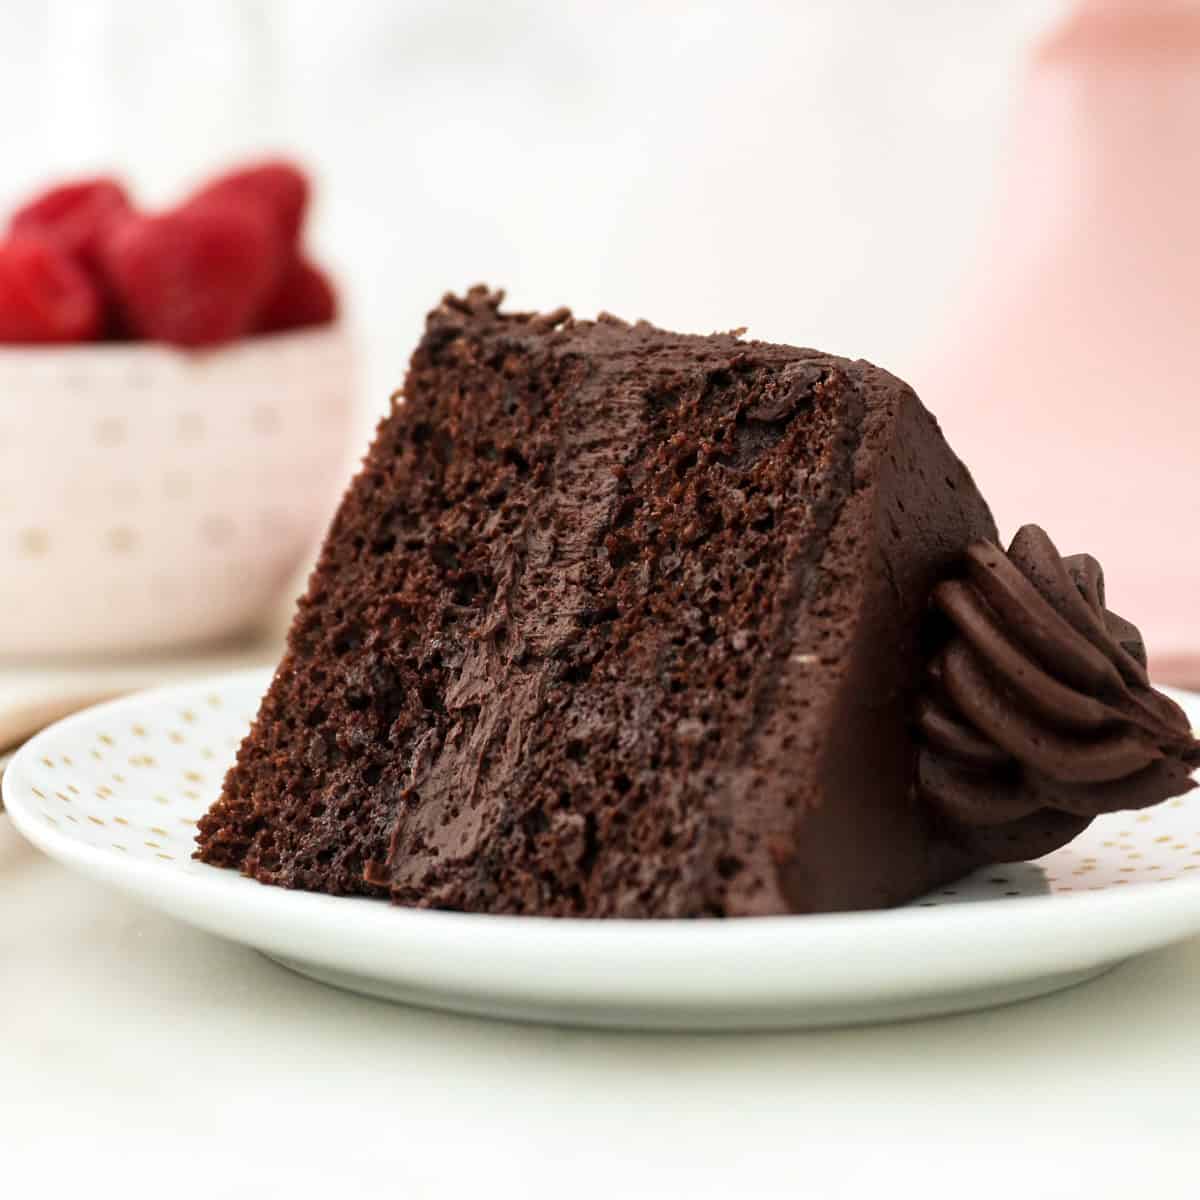 Mini 6 Inch Chocolate Cake Recipe - I Scream for Buttercream